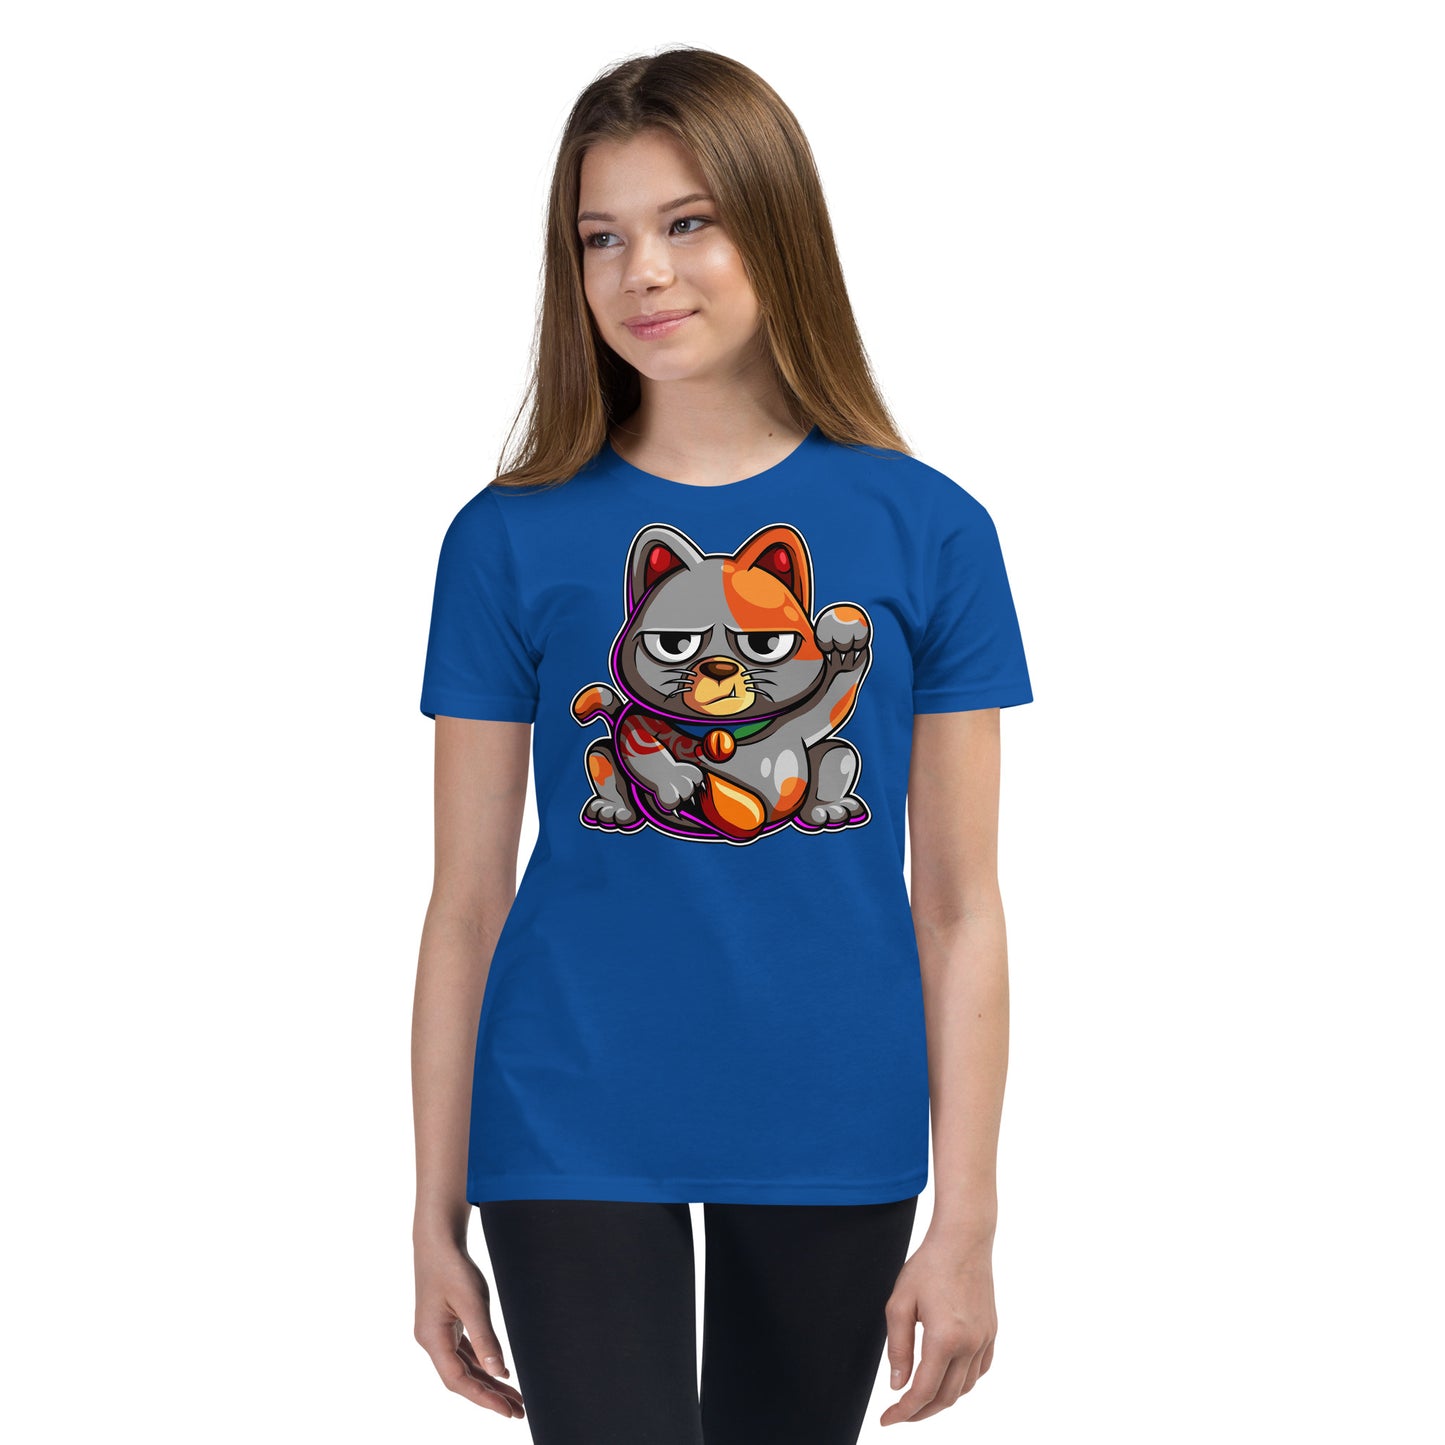 Cool Cat T-shirt, No. 0120